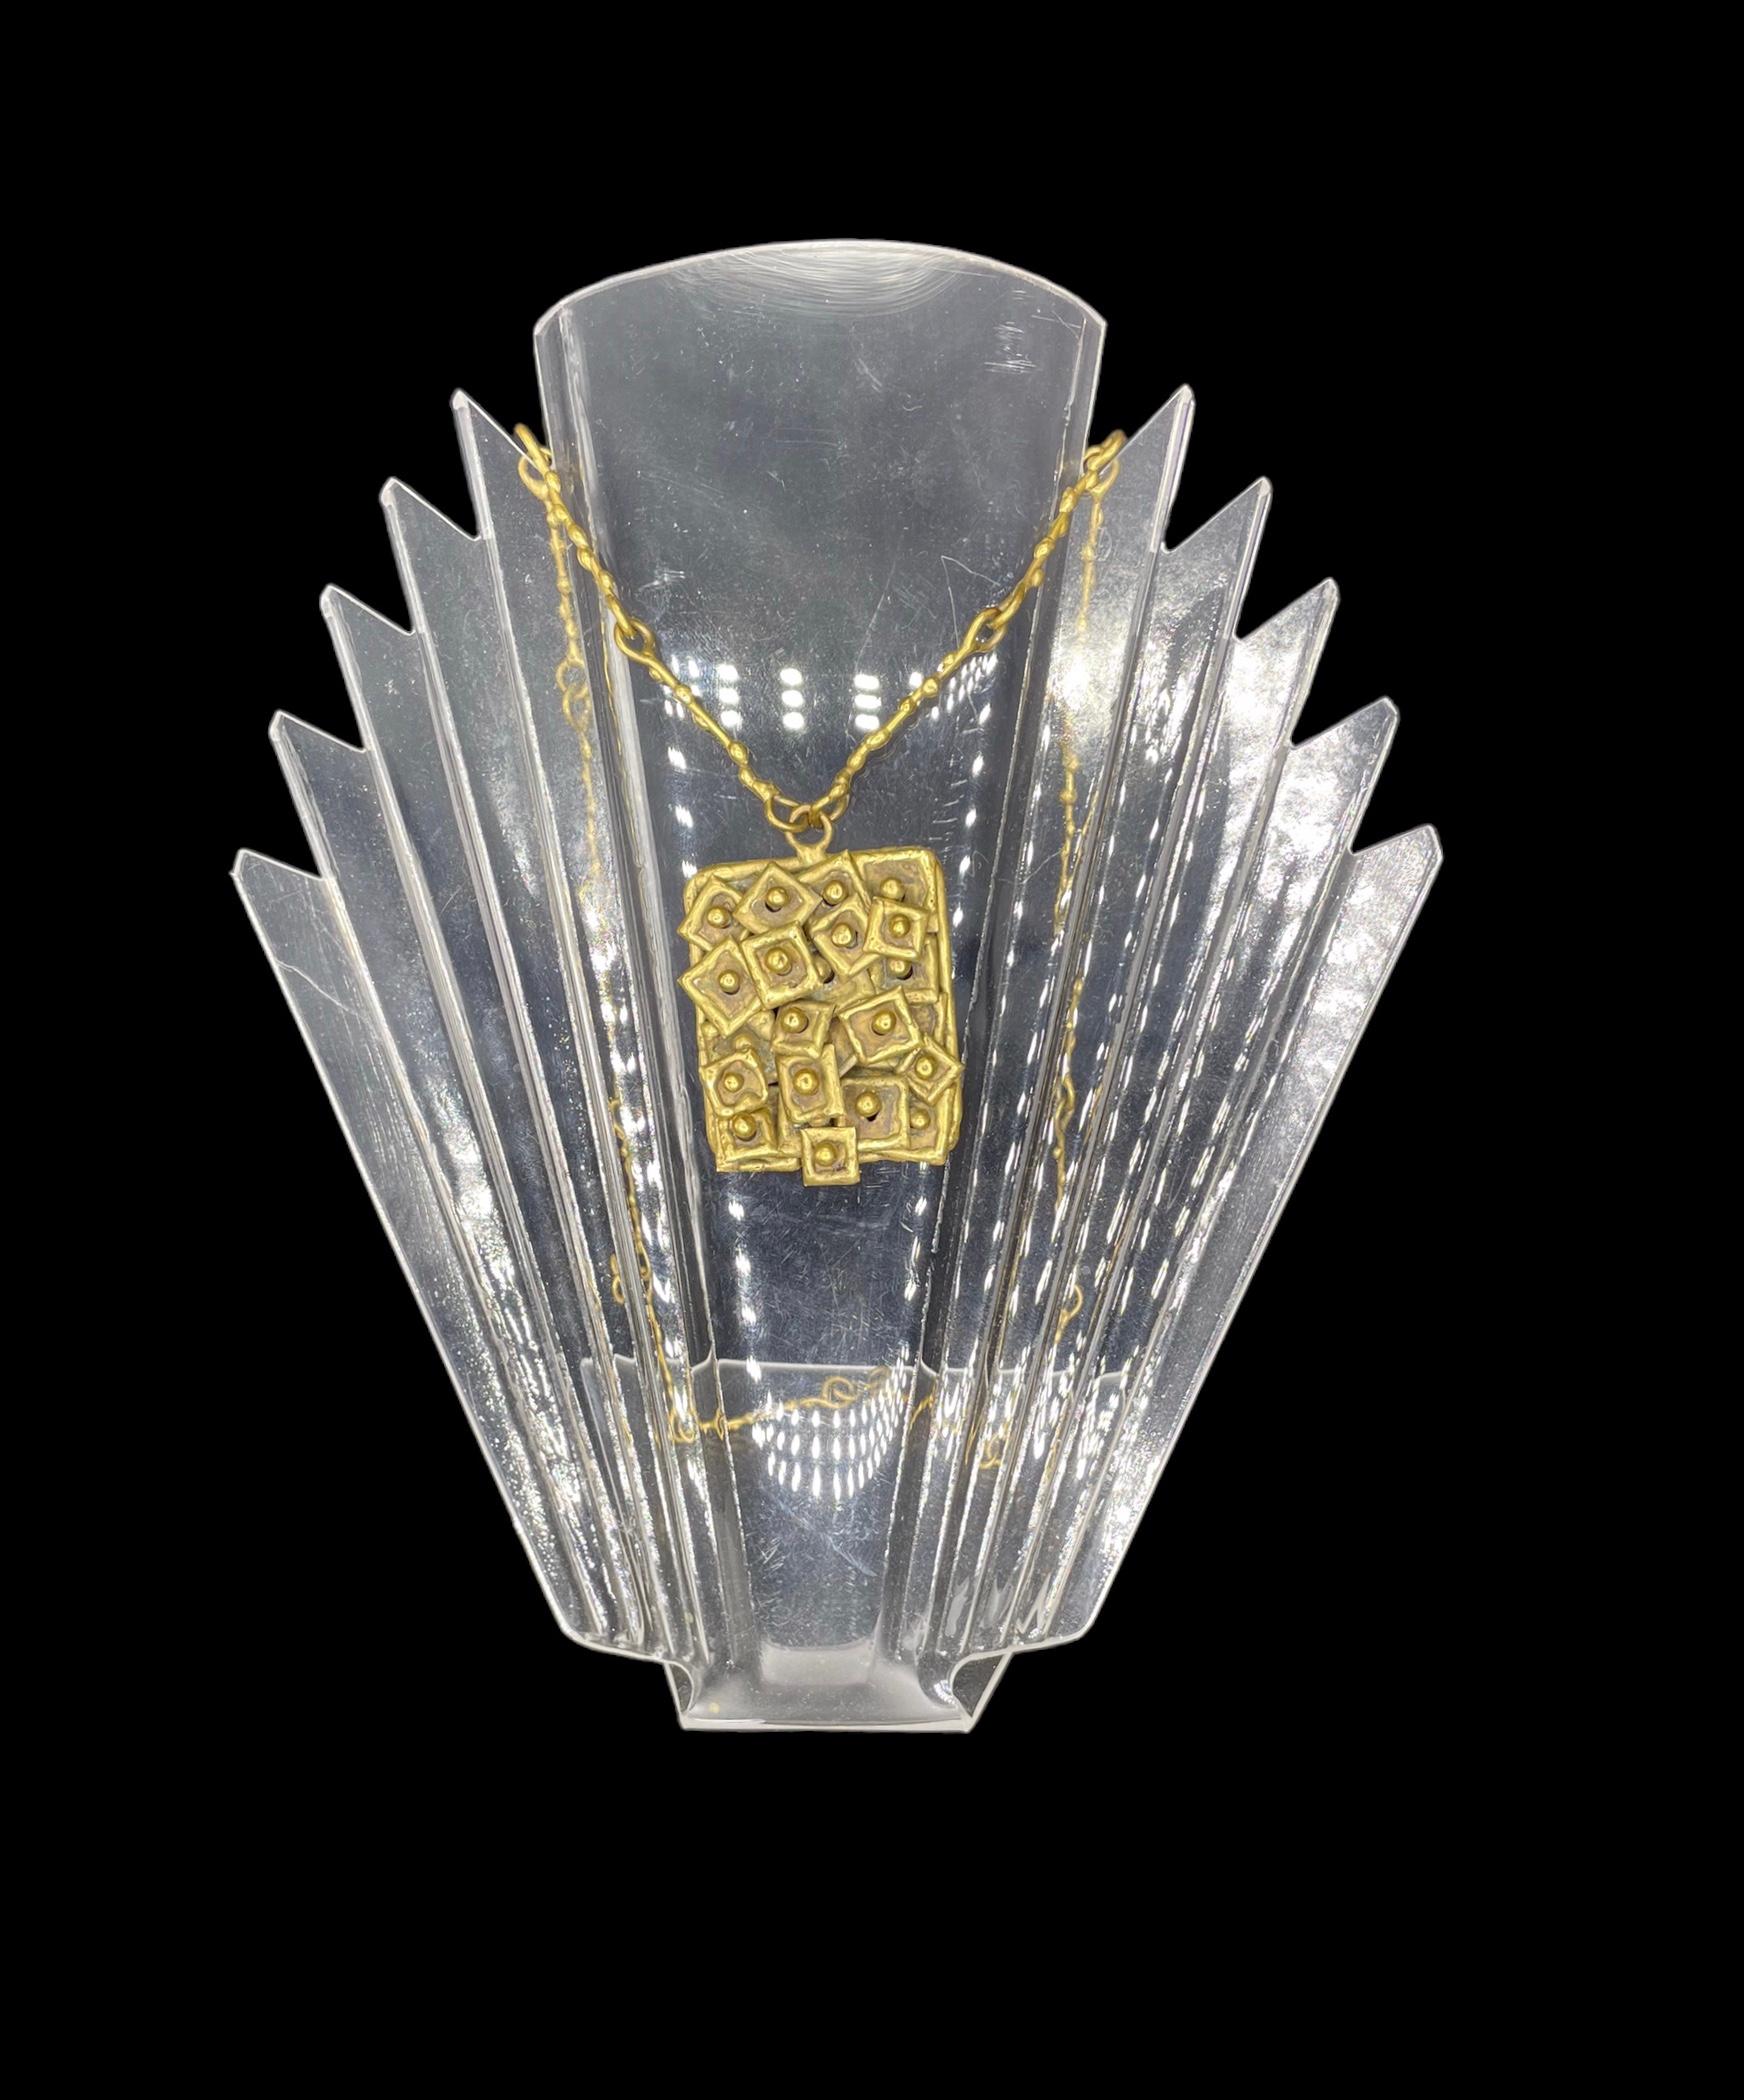 Conçu par Pal Kepenyes (1926-2021), ce collier brutaliste est réalisé en laiton, avec une patine naturelle vieillie.  Il est décoré de carreaux qui se chevauchent, ce qui donne à cette pièce artisanale une impression de mouvement. La chaîne